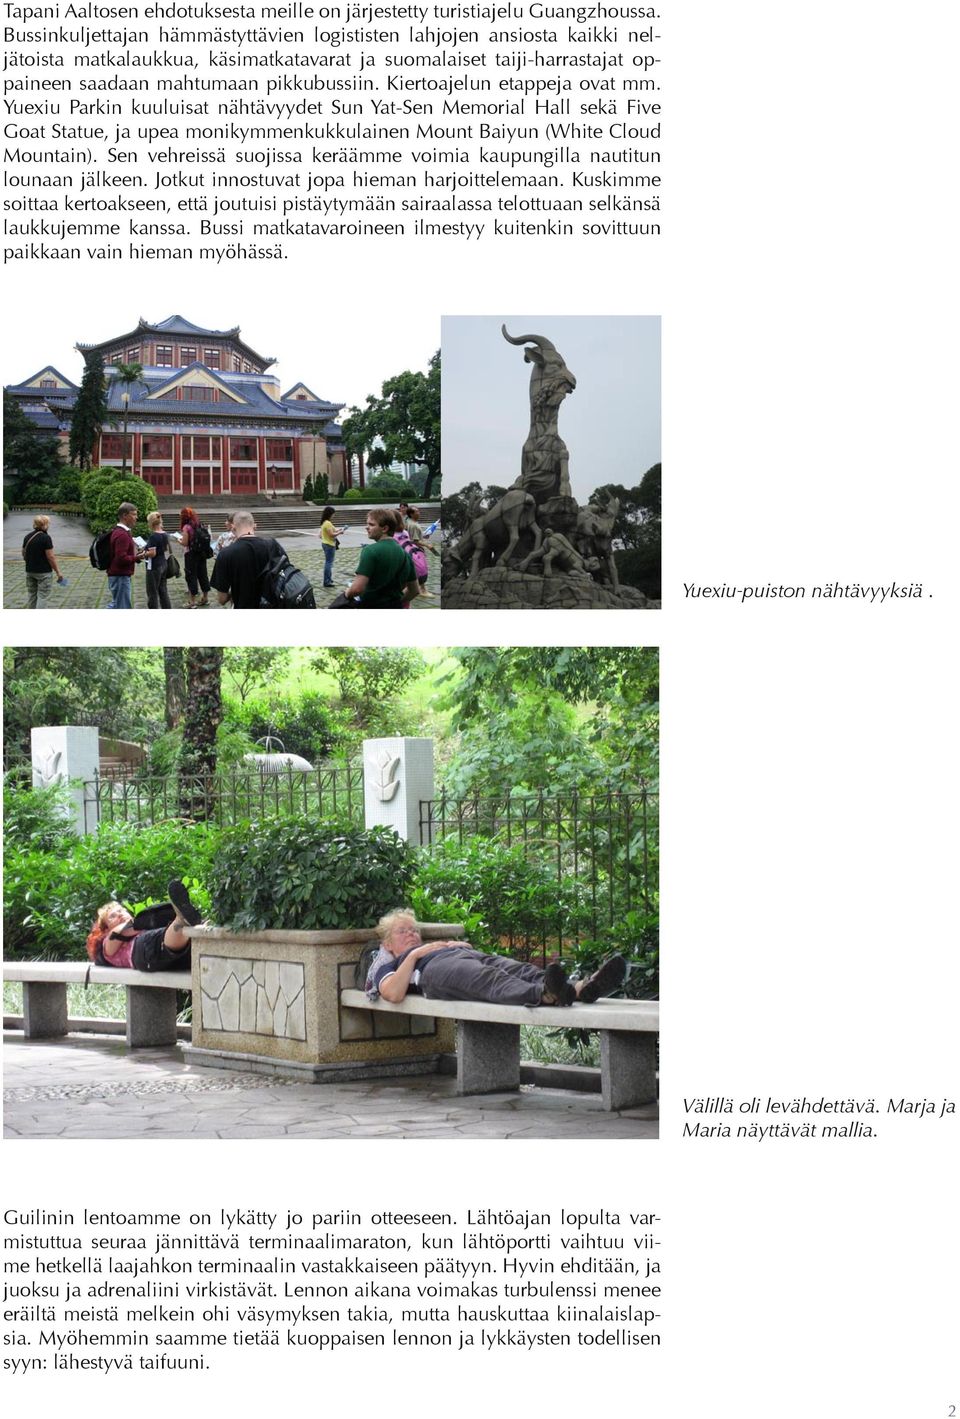 Kiertoajelun etappeja ovat mm. Yuexiu Parkin kuuluisat nähtävyydet Sun Yat-Sen Memorial Hall sekä Five Goat Statue, ja upea monikymmenkukkulainen Mount Baiyun (White Cloud Mountain).